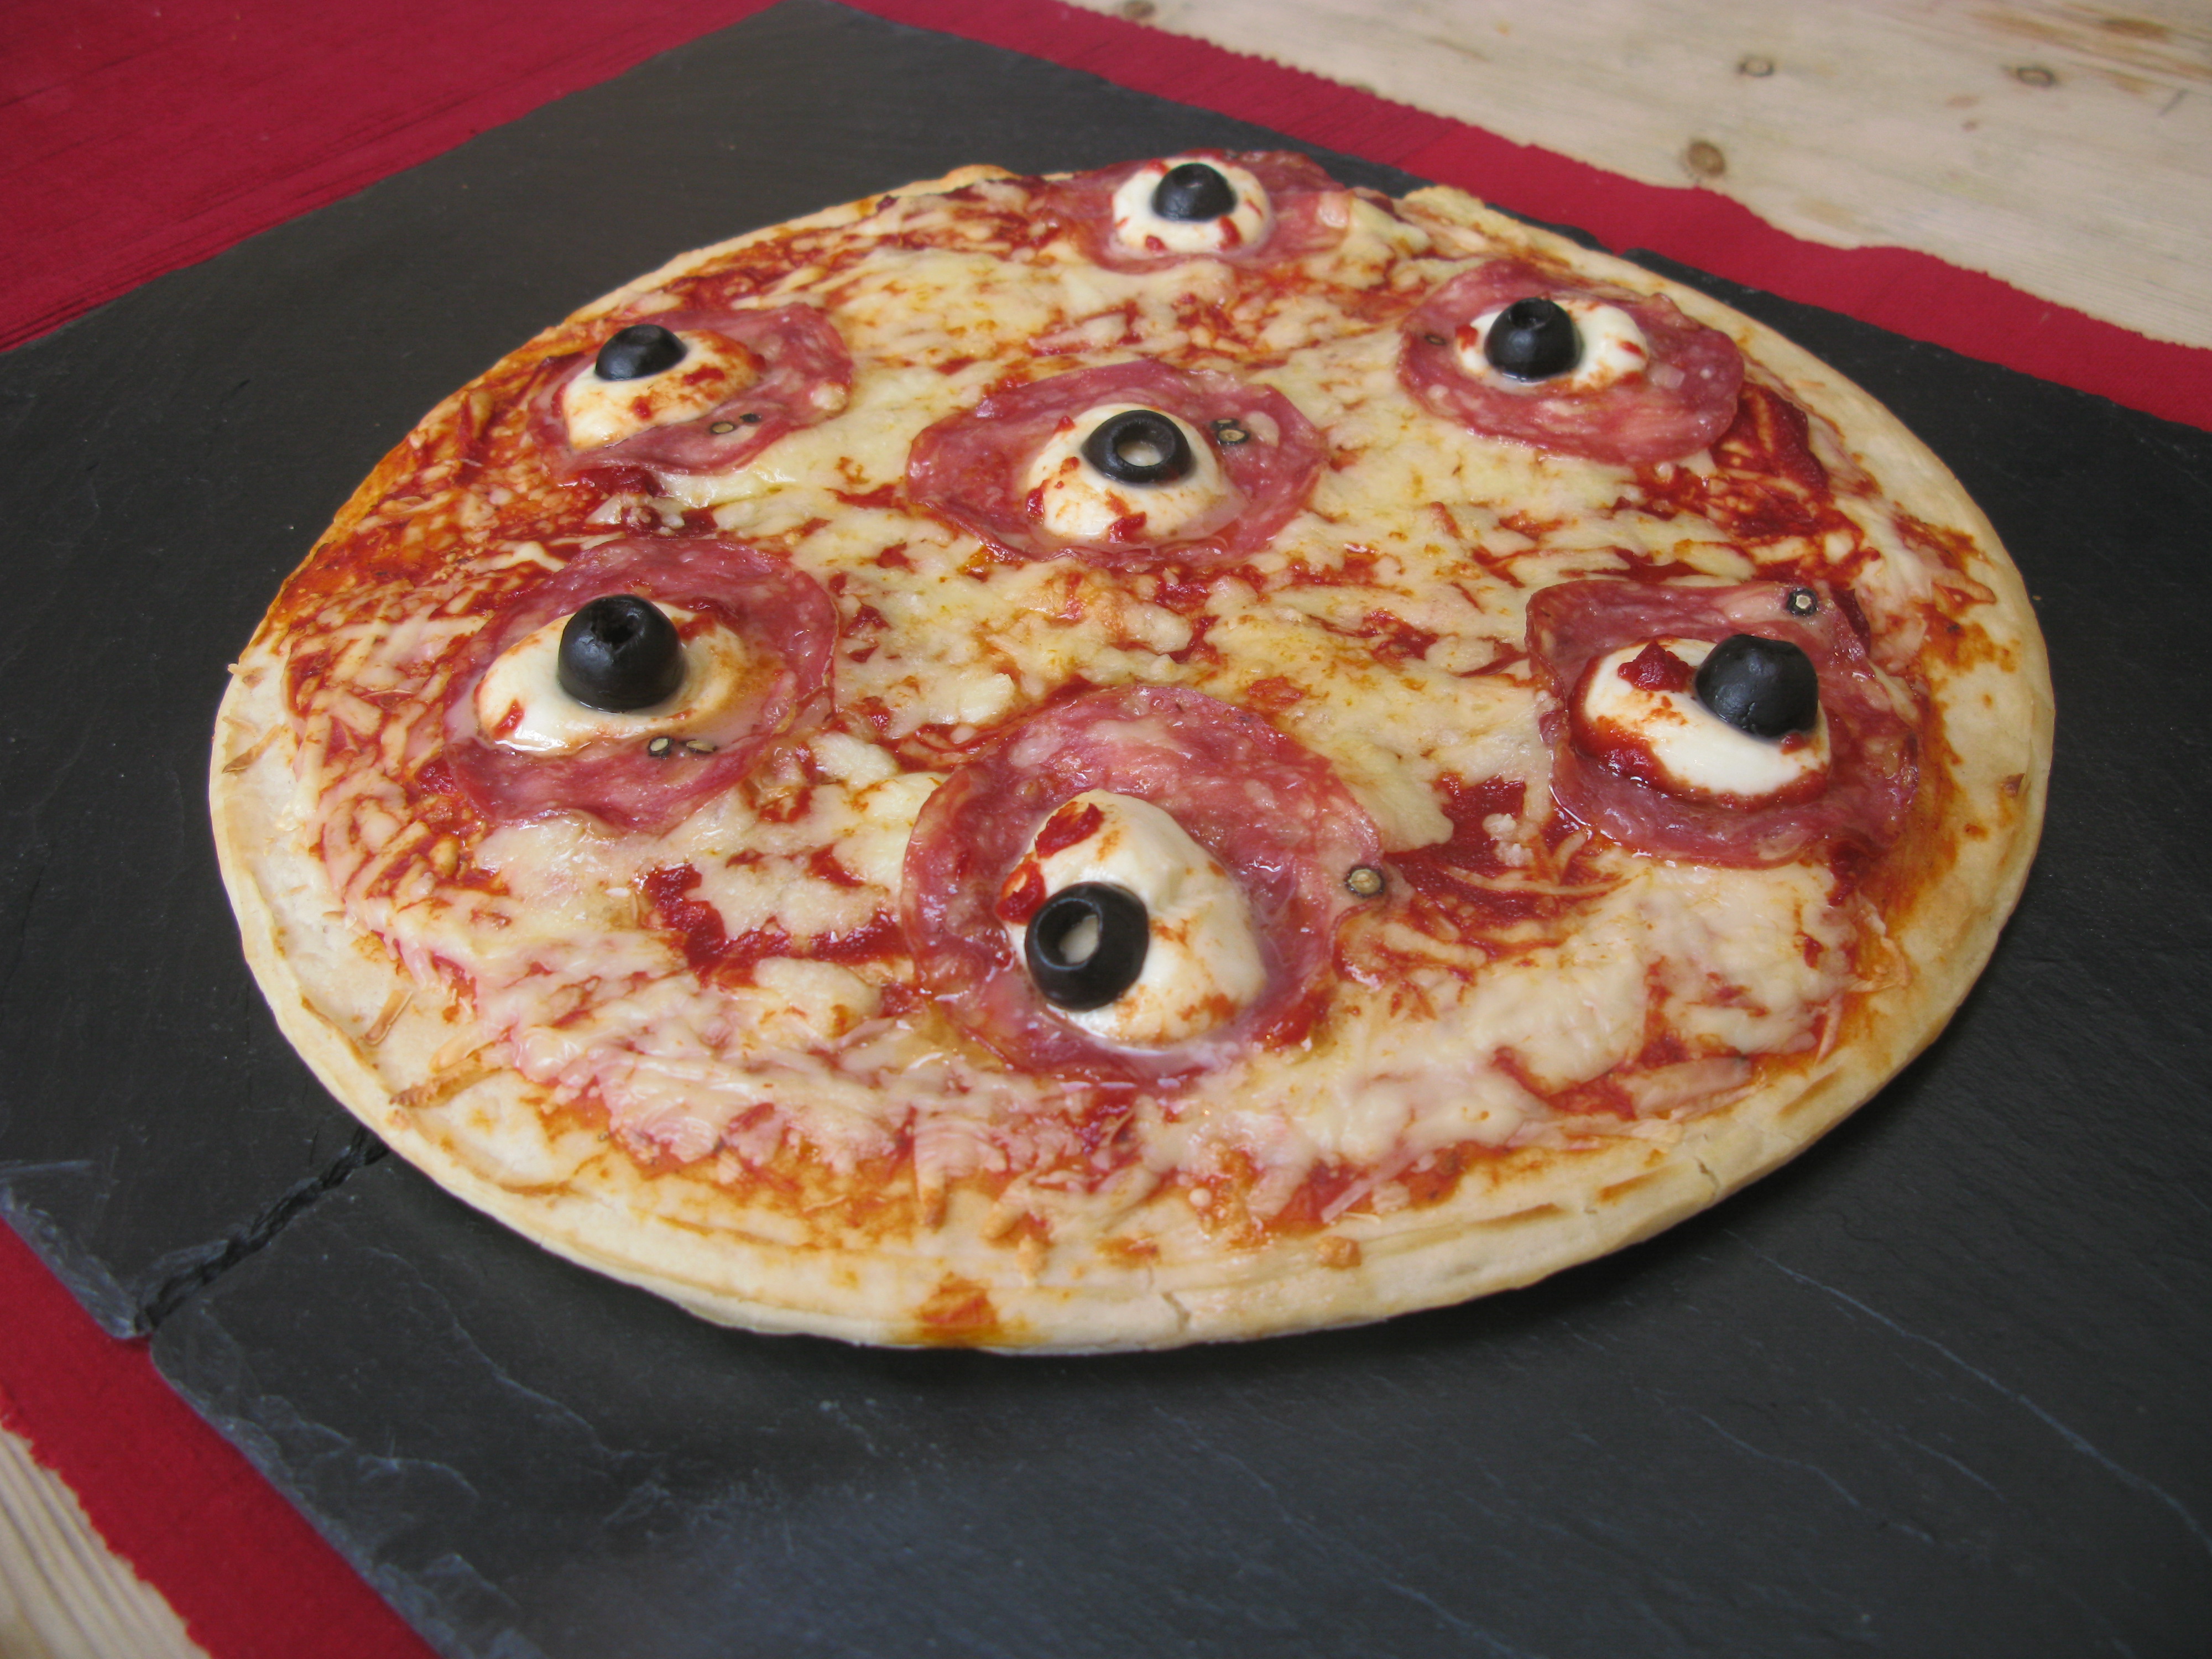 La pizza stregata (http://froggleblog.wordpress.com/)